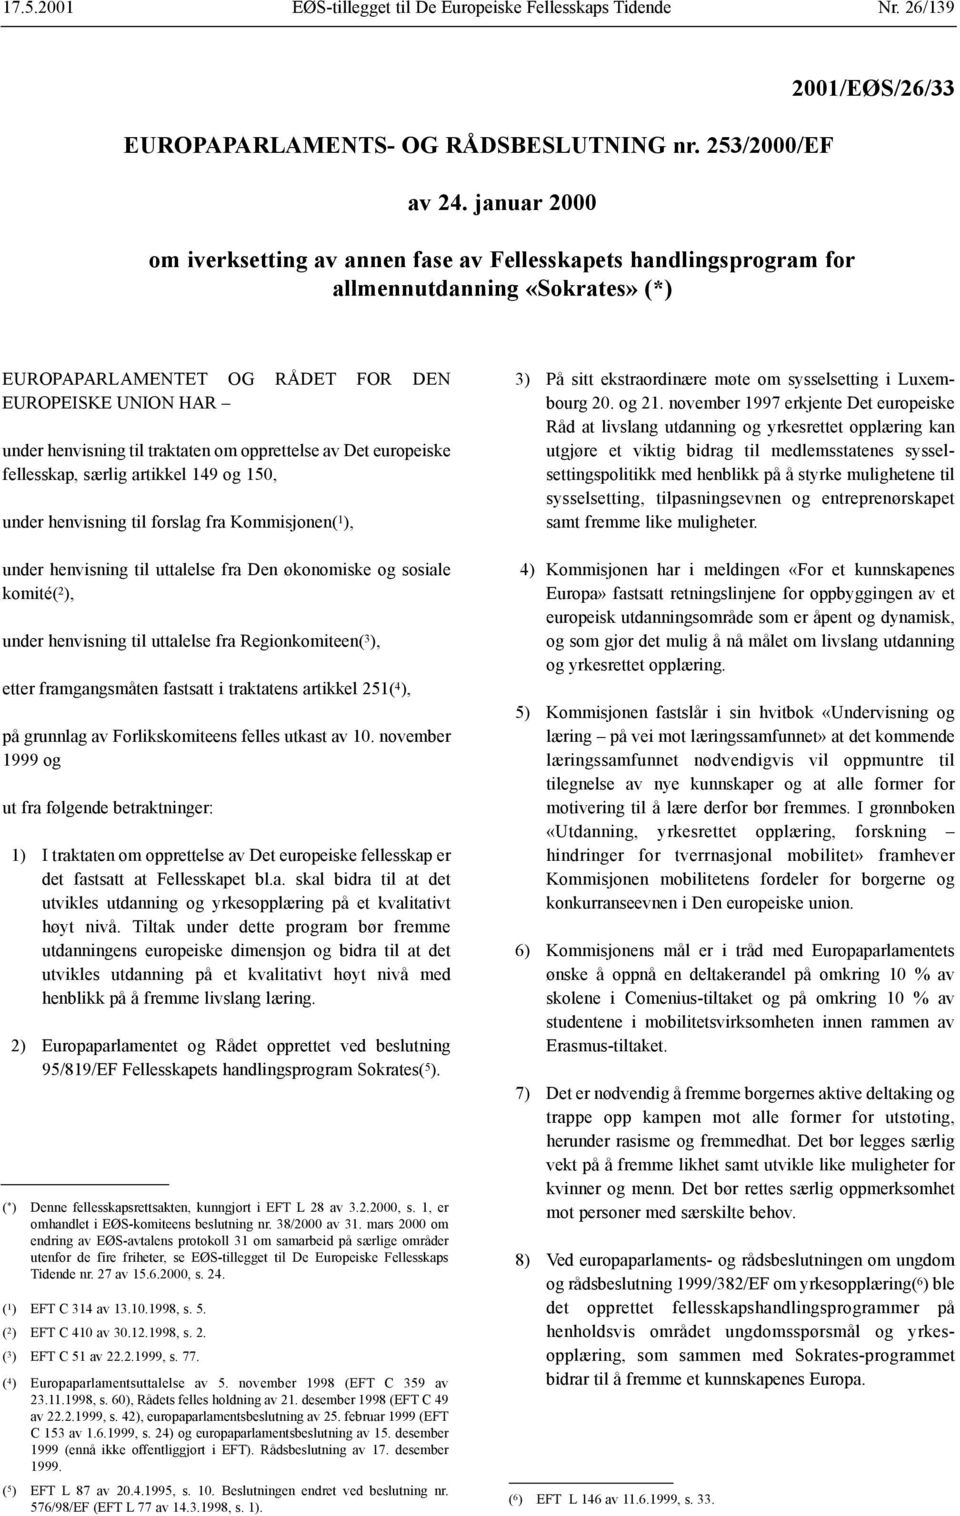 til traktaten om opprettelse av Det europeiske fellesskap, særlig artikkel 149 og 150, under henvisning til forslag fra Kommisjonen( 1 ), under henvisning til uttalelse fra Den økonomiske og sosiale